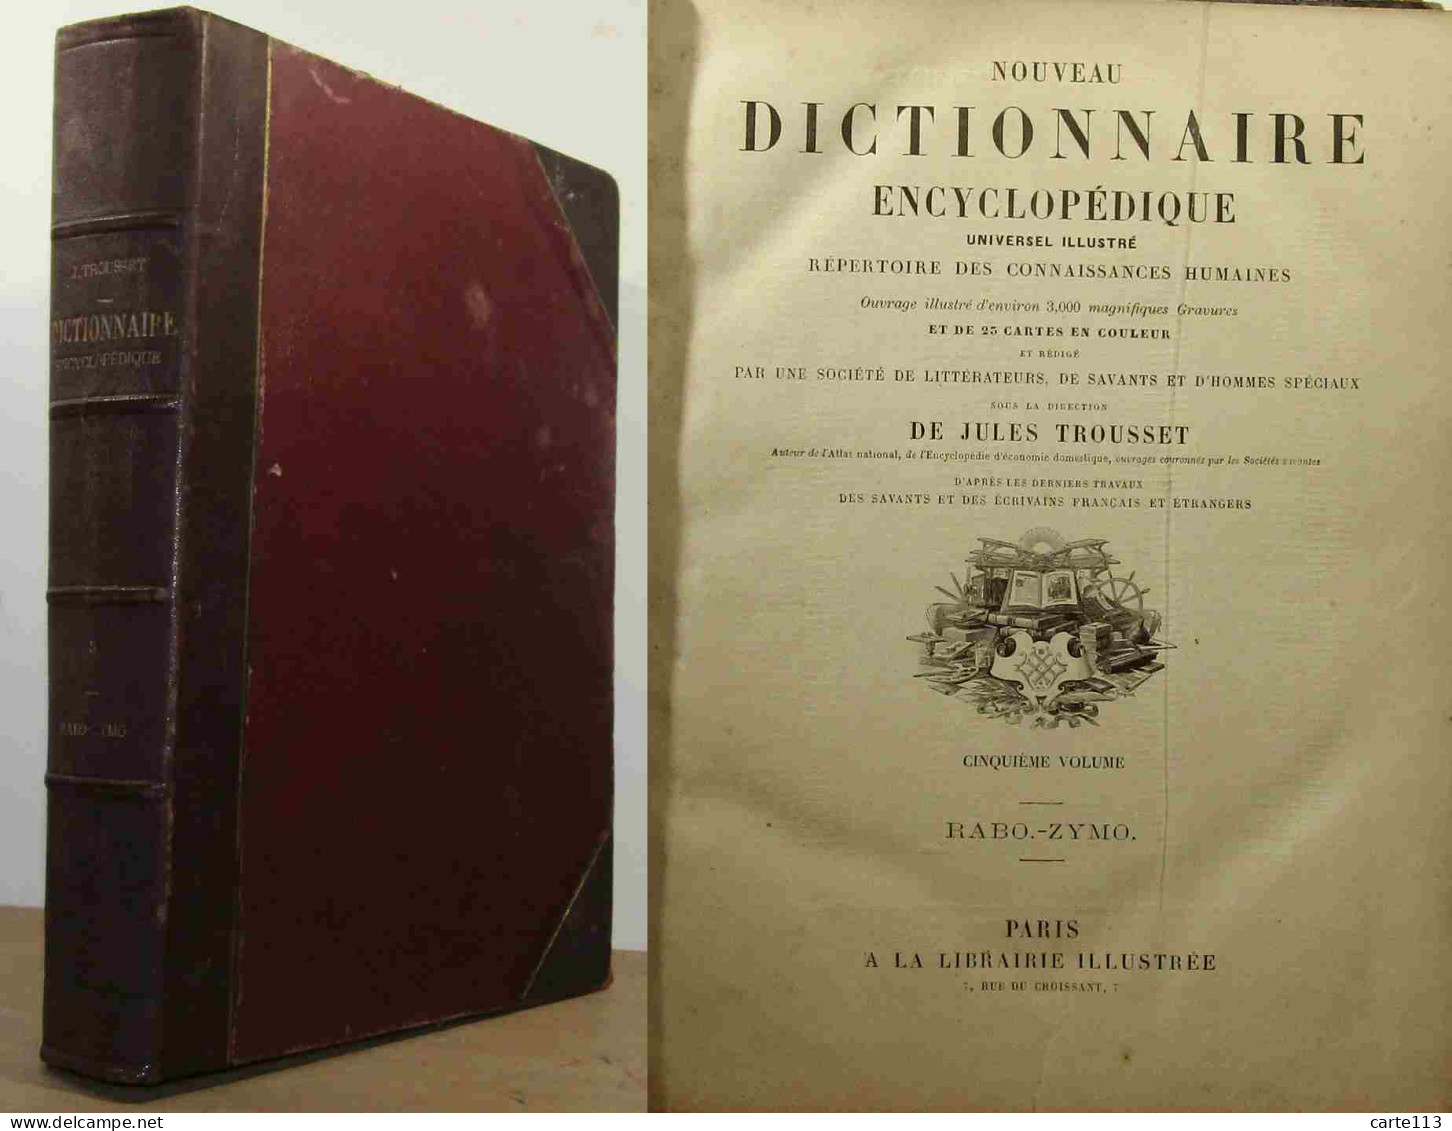 TROUSSET Jules - NOUVEAU DICTIONNAIRE ENCYCLOPEDIQUE UNIVERSEL ILLUSTRE - VOLUME 5 - R - 1801-1900